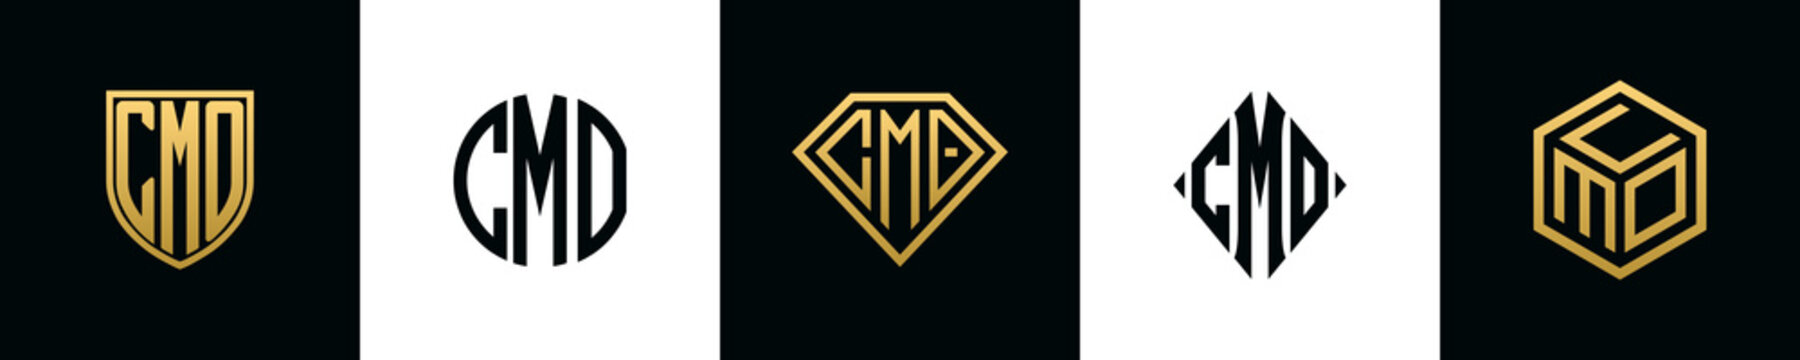 Initial letters CMO logo designs Bundle